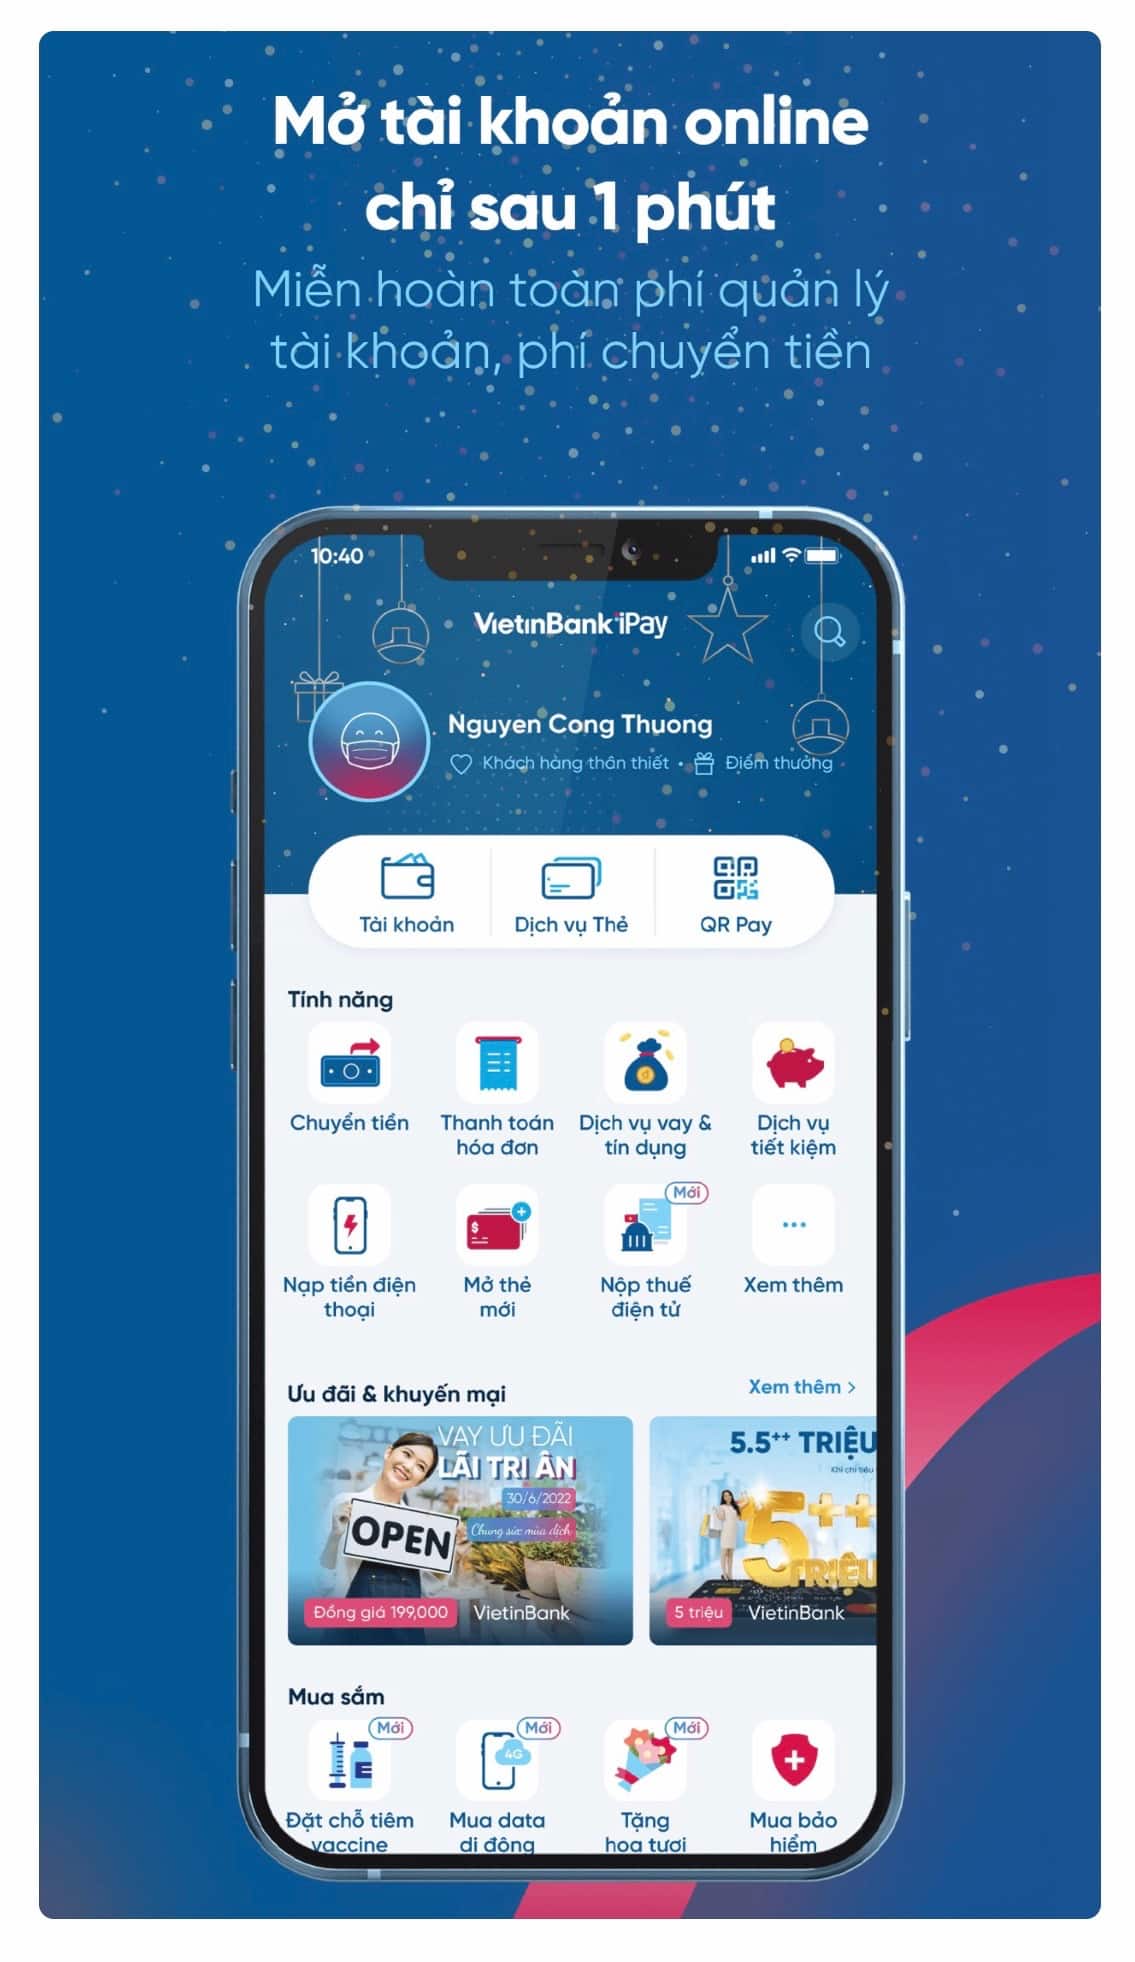 Chỉ cần tải App ngân hàng số Vietinbank iPay về điện thoại là bạn có thể sử dụng hàng trăm tiện ích từ ứng dụng này.